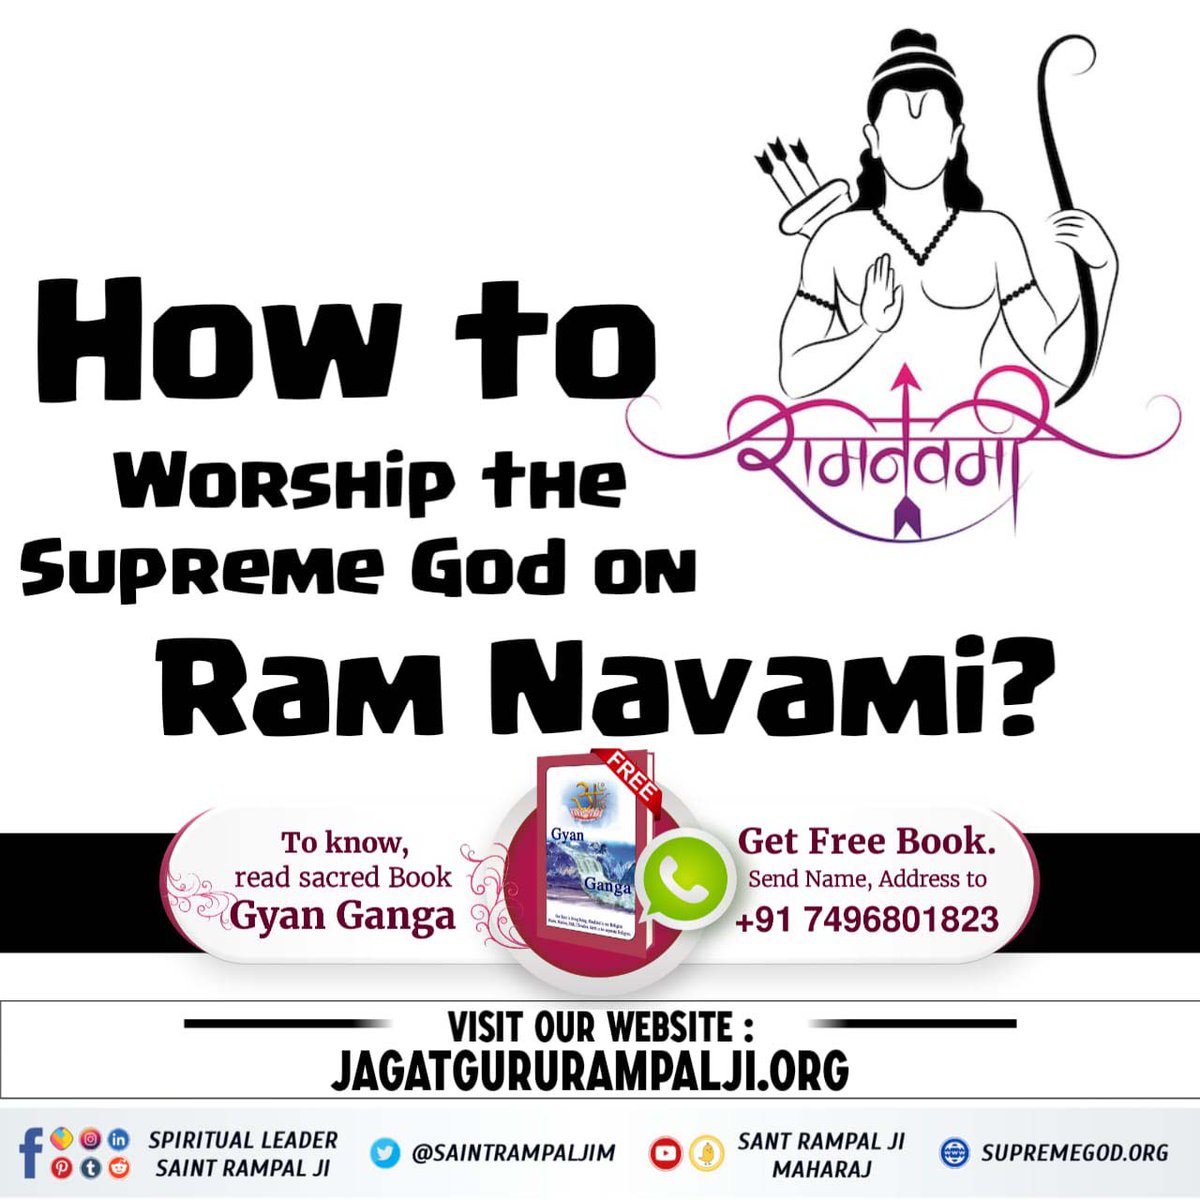 कौन से राम का नाम जपना चाहिए? जानने के लिए अवश्य पढ़ें ज्ञान गंगा। 

#रामनवमी #आदि #राम #रामलला #अयोध्या
#Who_Is_AadiRam #AadiRam
#Kabir_Is_God #ram #ramnavami #RamLalla #ayodhya #suryatilak #rammandir #jaishreeram
#SantRampalJiMaharaj #news #viral #trending #ceremony #ramtemple